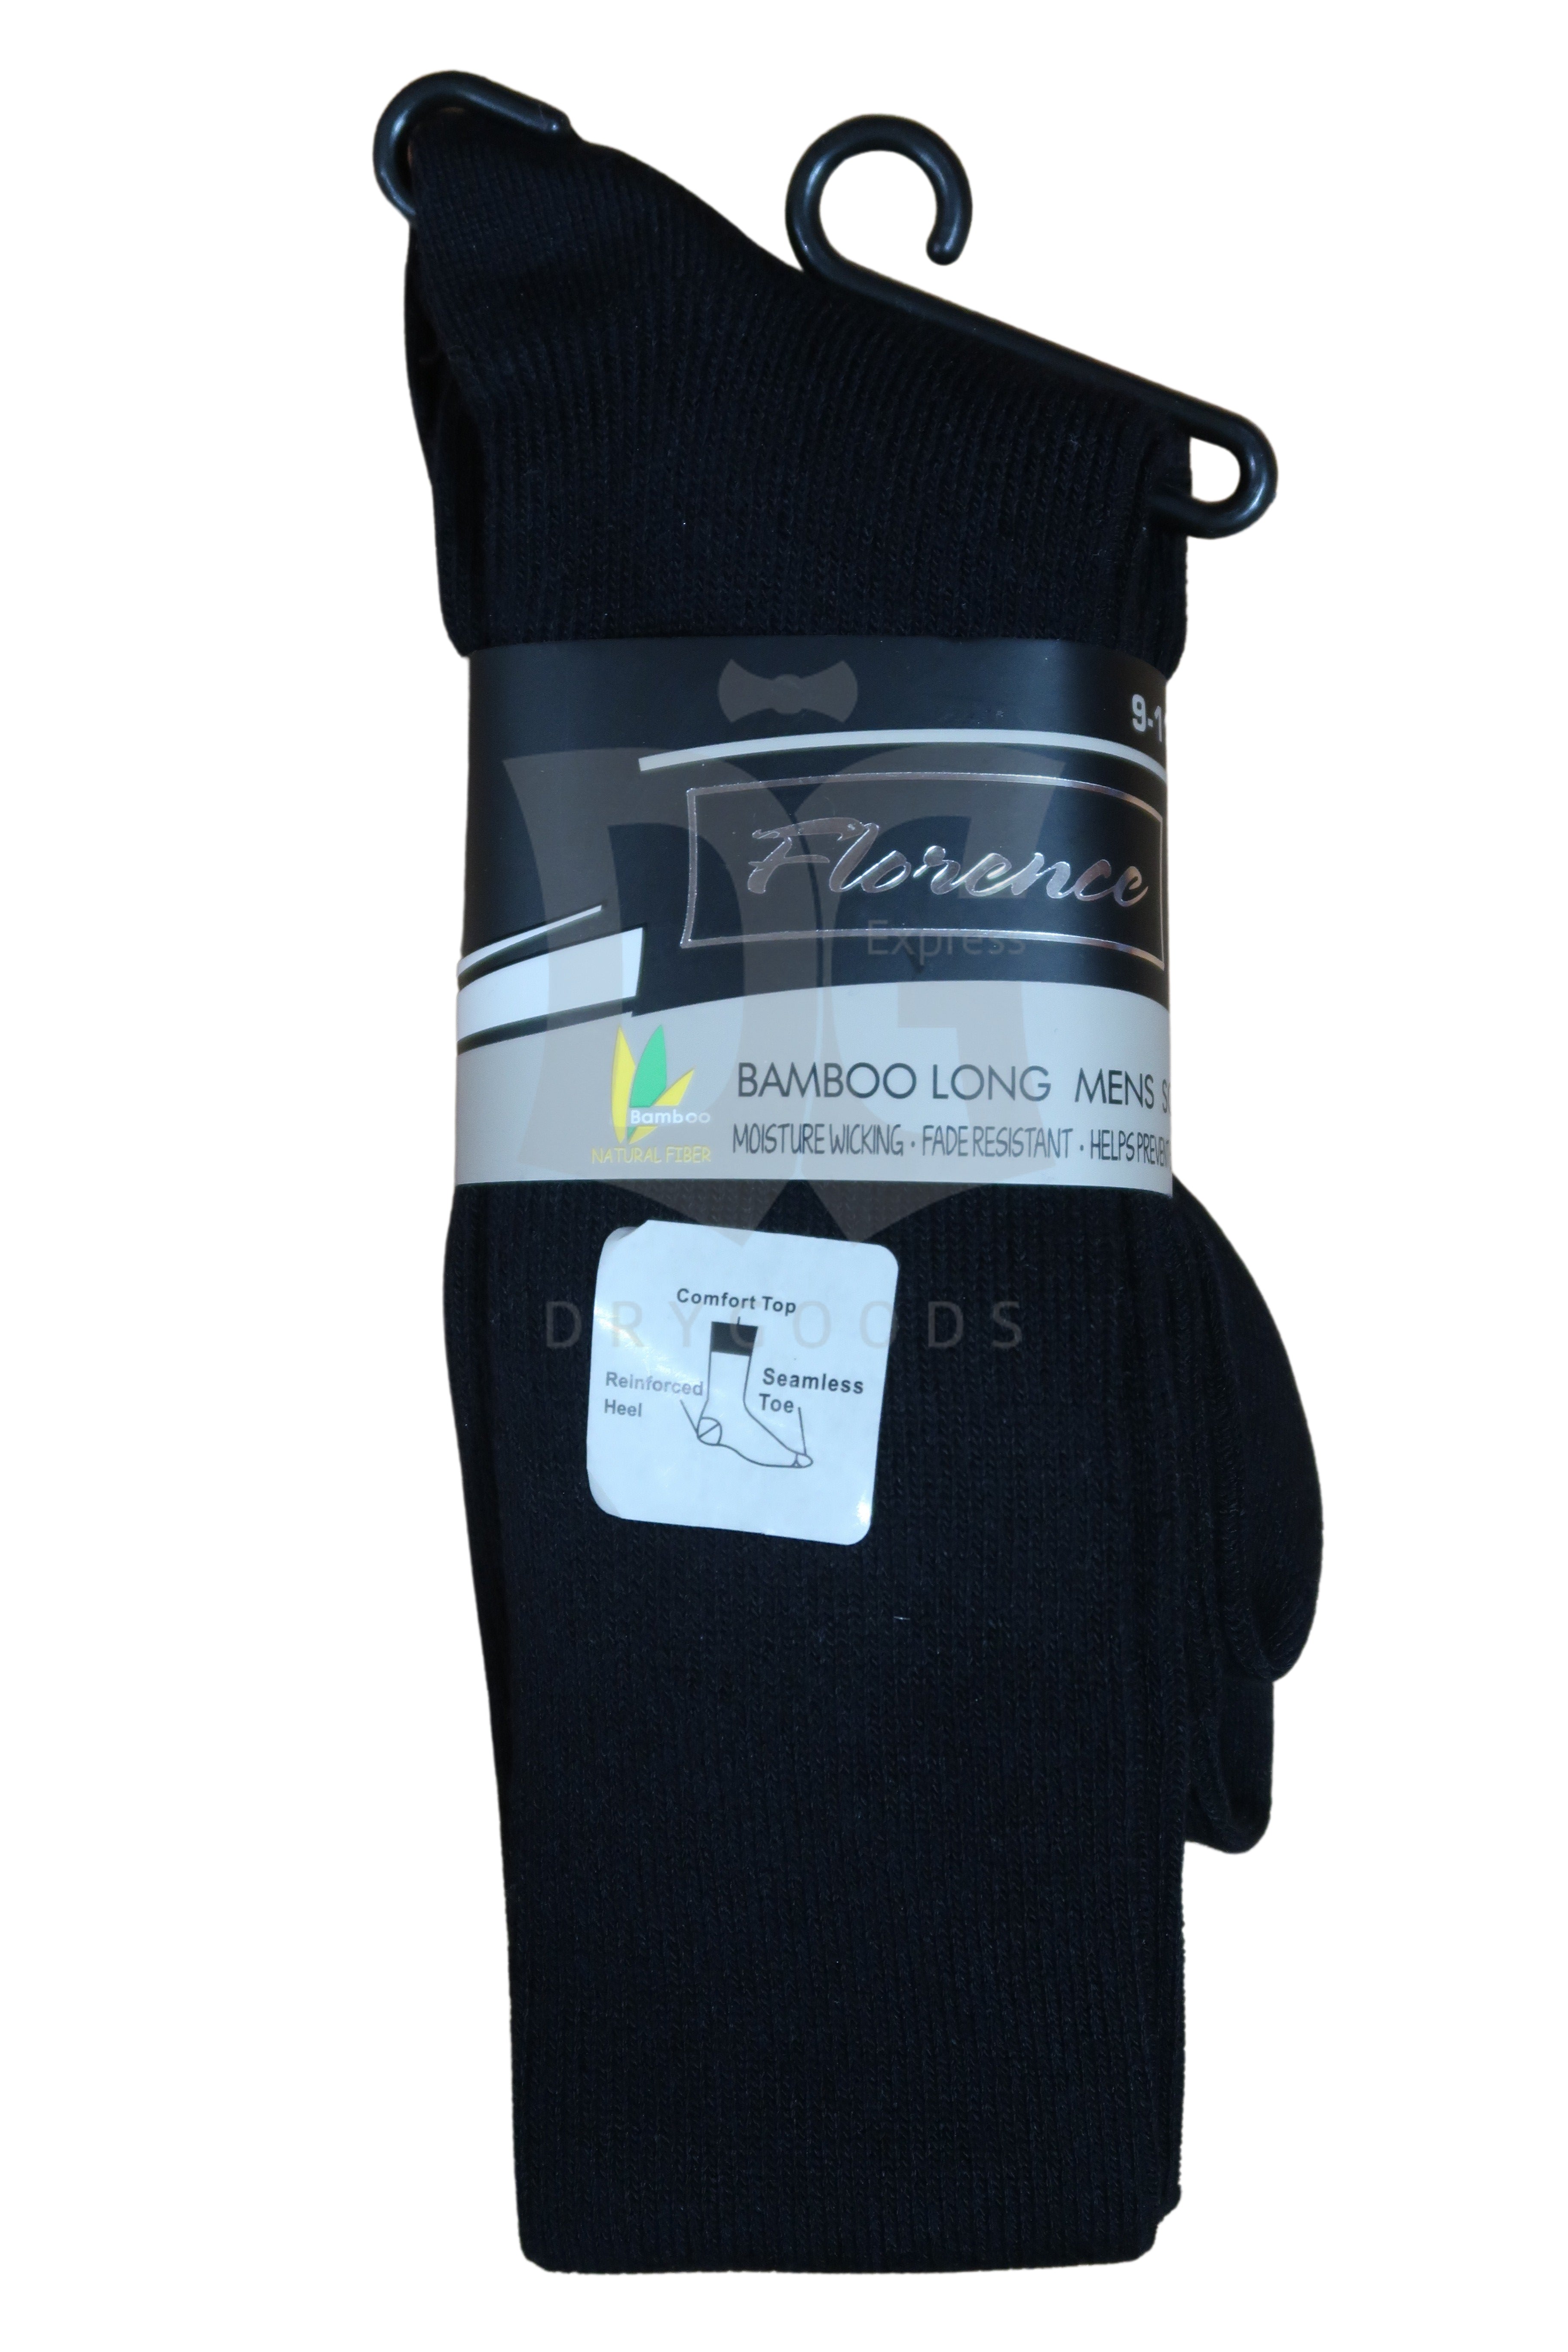 Florence Bamboo Men's Long Black Socks